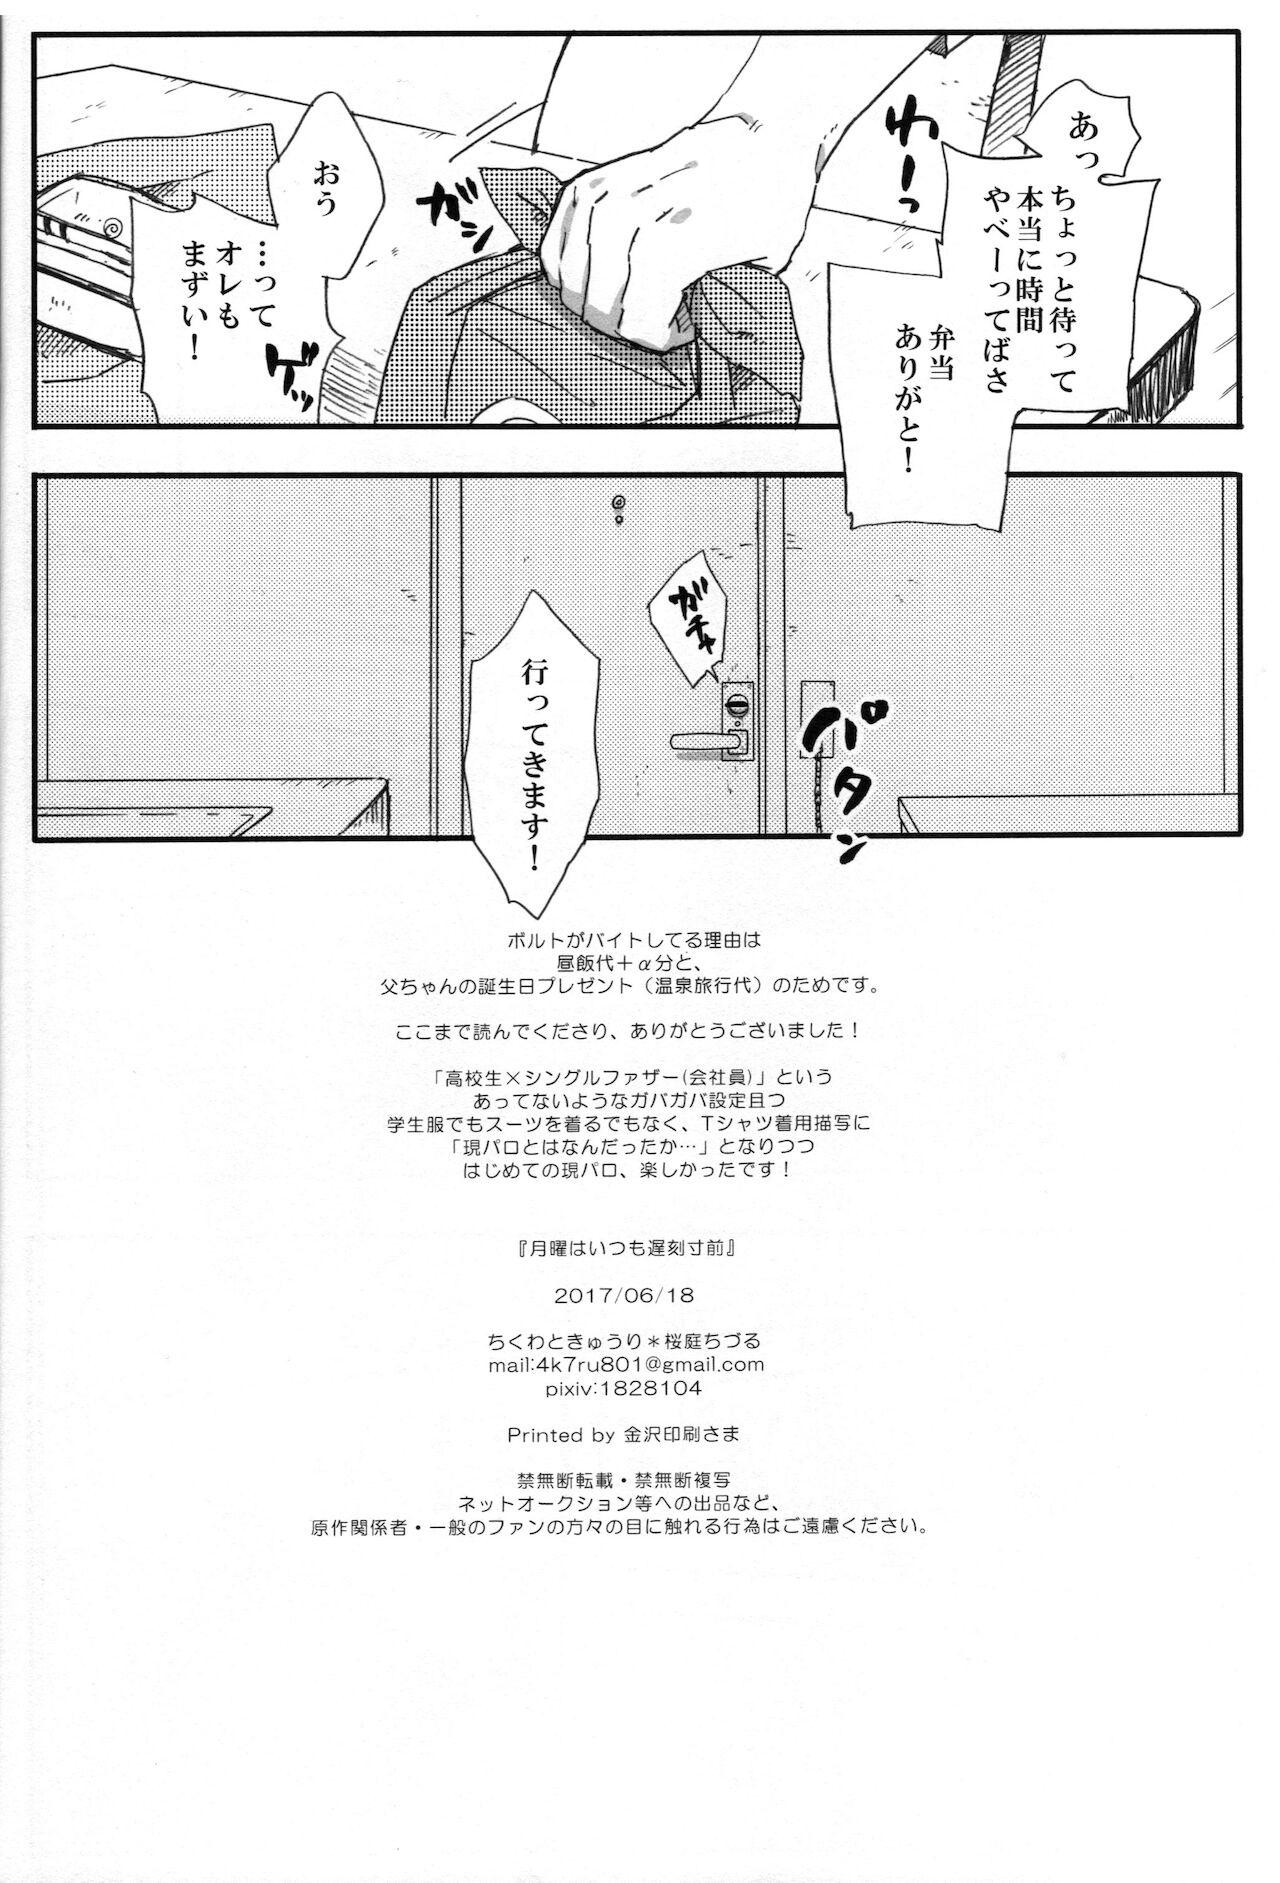 Ftvgirls Getsuyou wa itsumo chikoku sunzen - Naruto Hidden Camera - Page 25